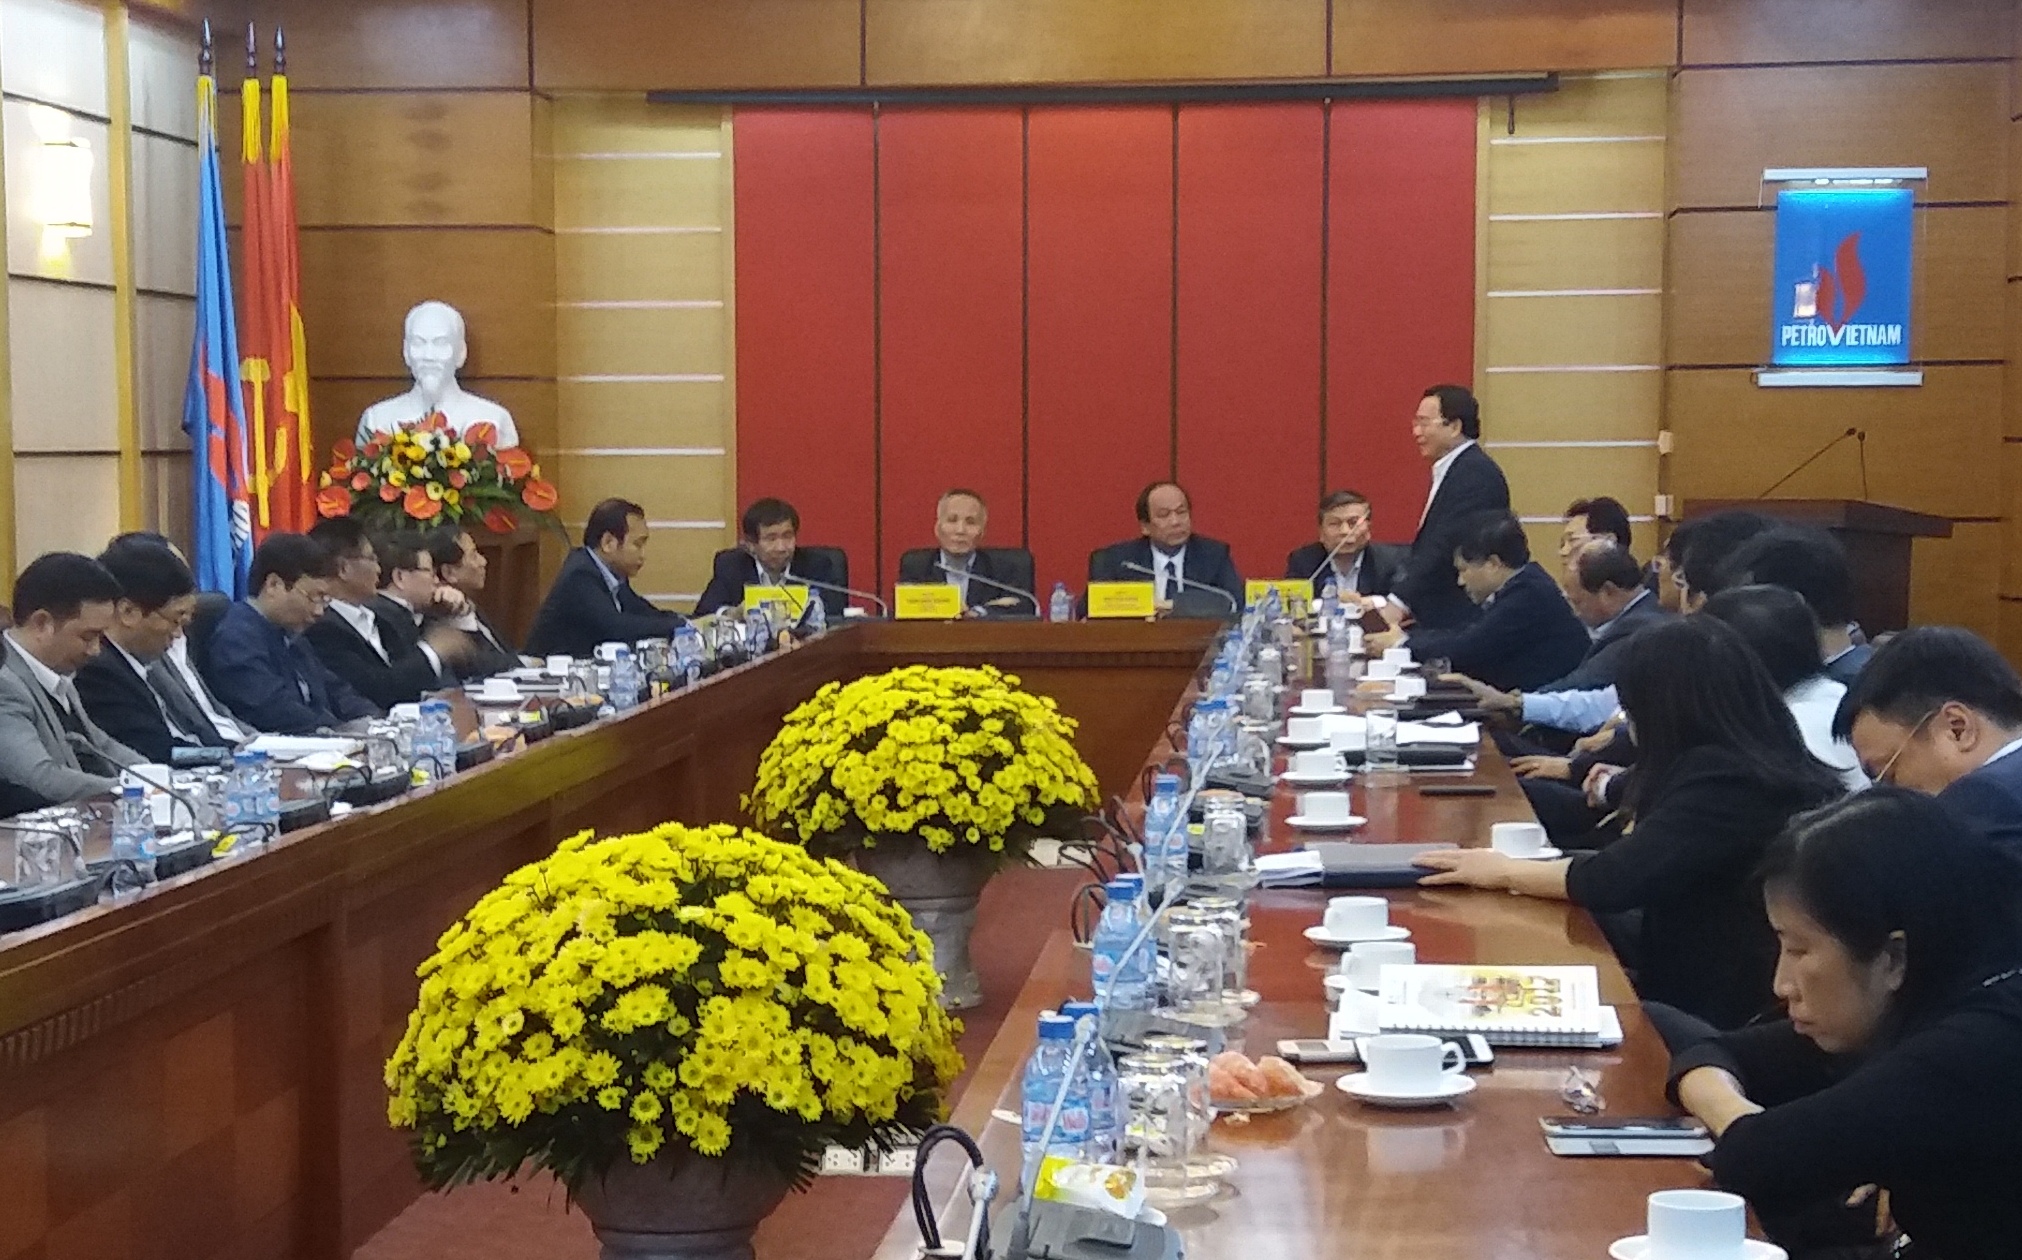  Triển khai quyết định của Thủ tướng về công tác cán bộ  Tập đoàn Dầu khí Việt Nam